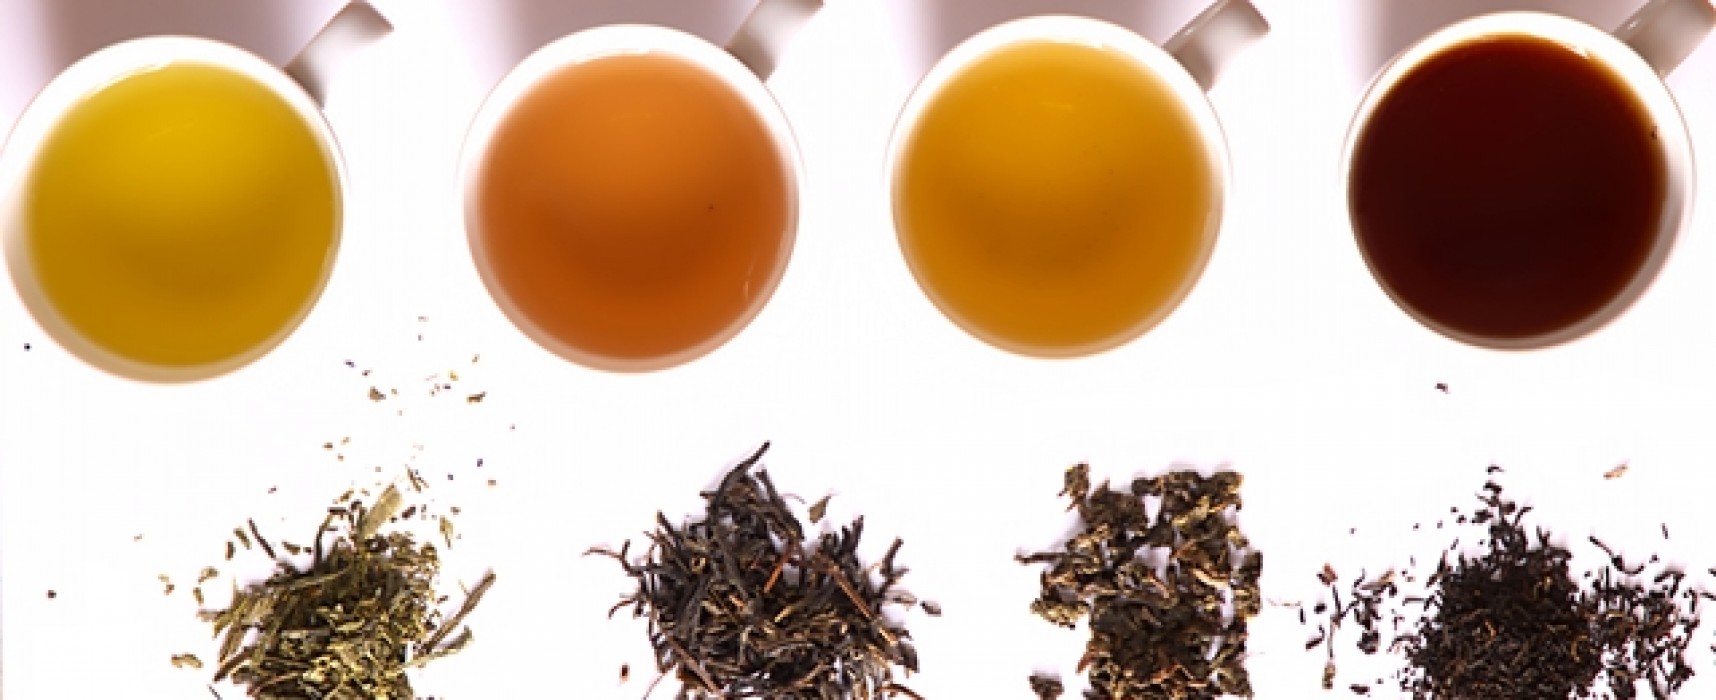 Different Varieties of Tea